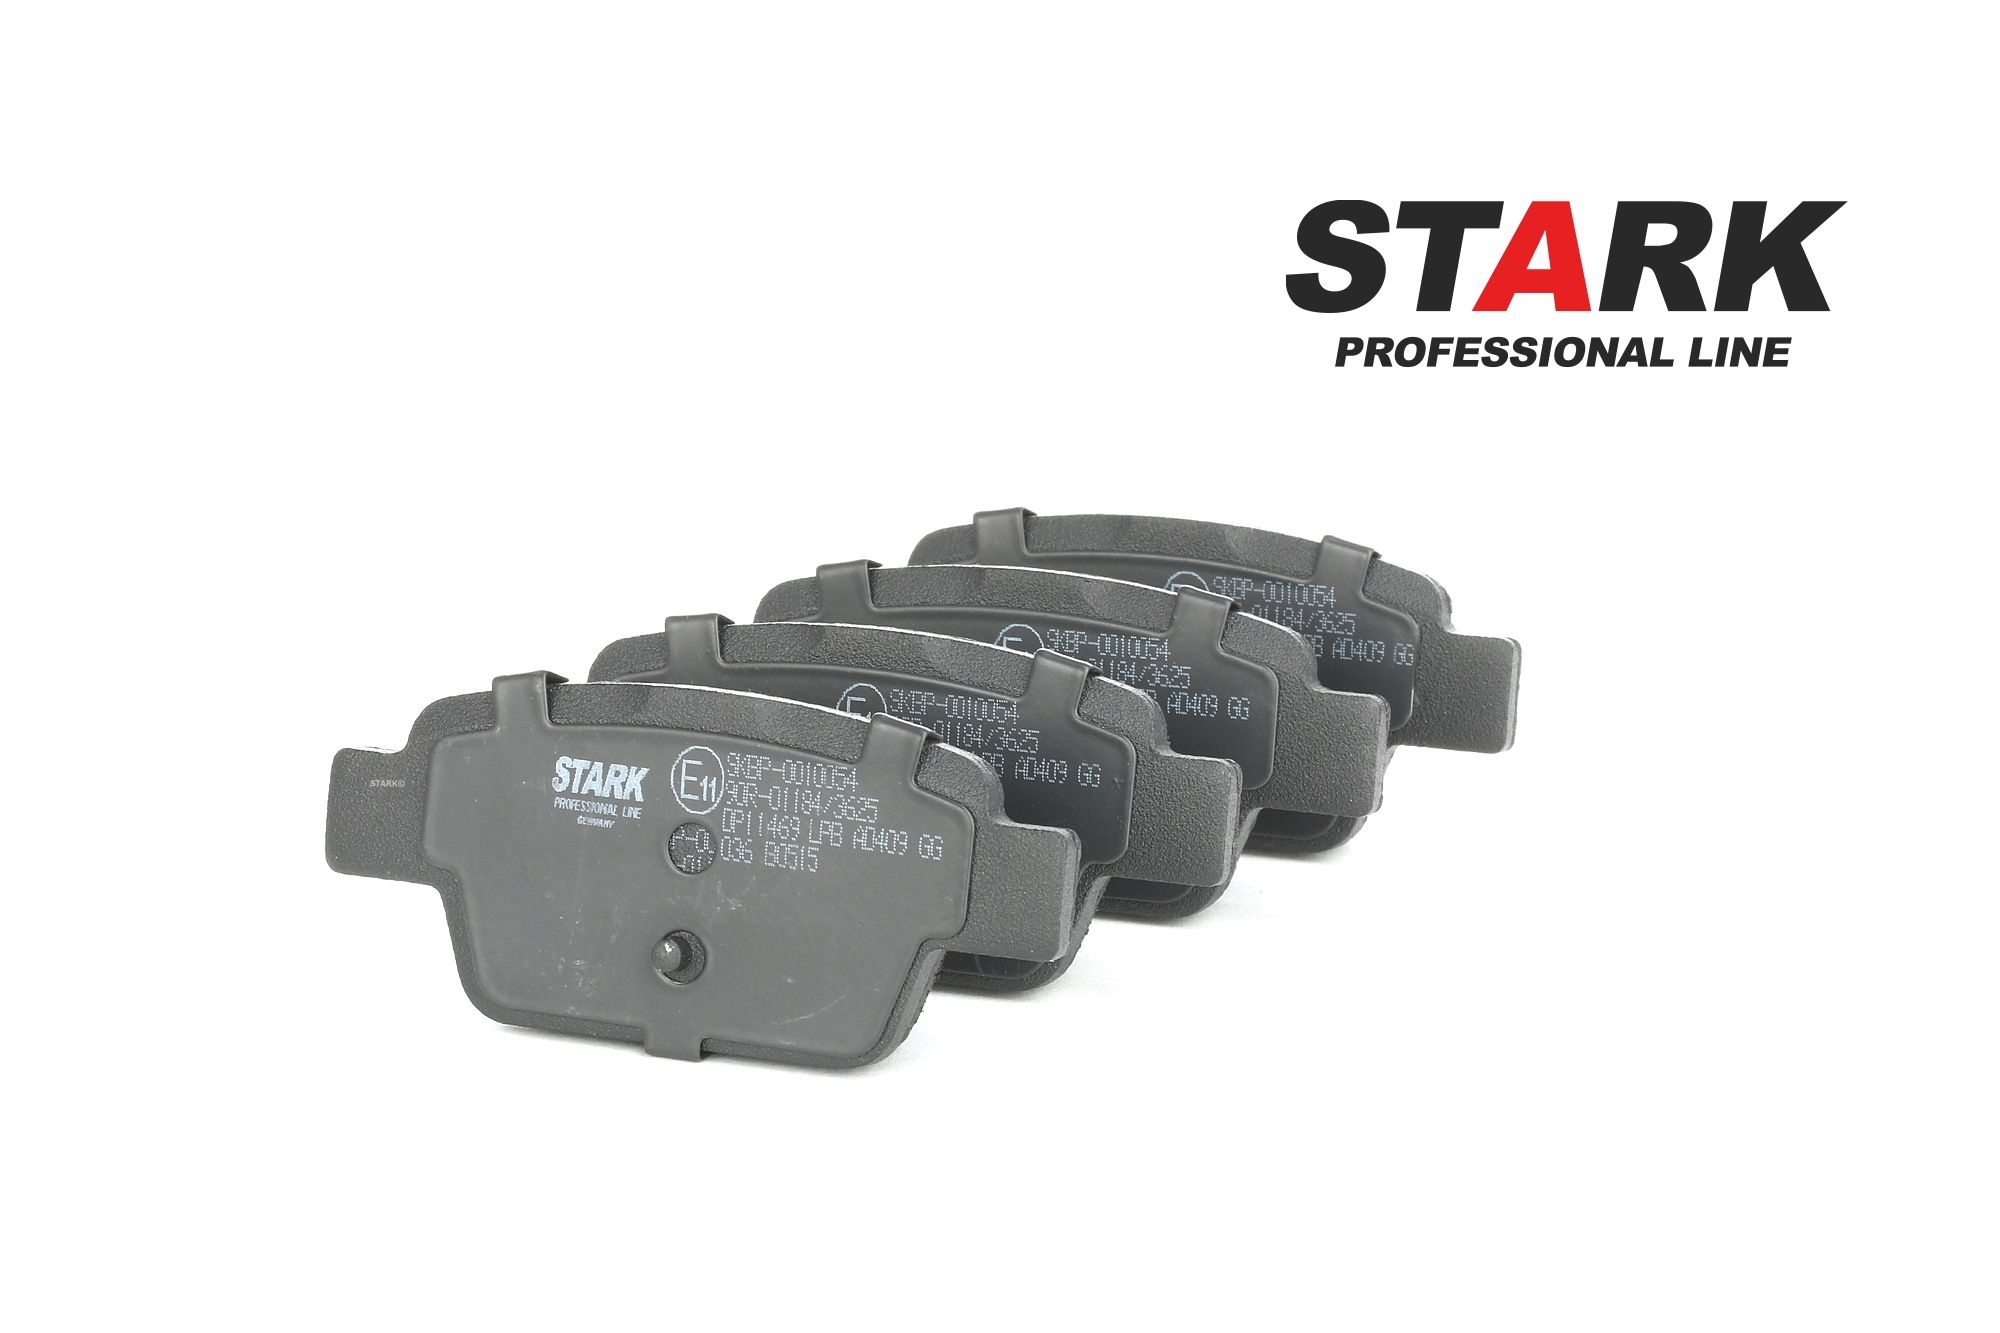 STARK SKBP-0010054 Kit pastiglie freni Assale posteriore, Non predisposto per contatto segnalazione usura, senza contatto segnalazione usura